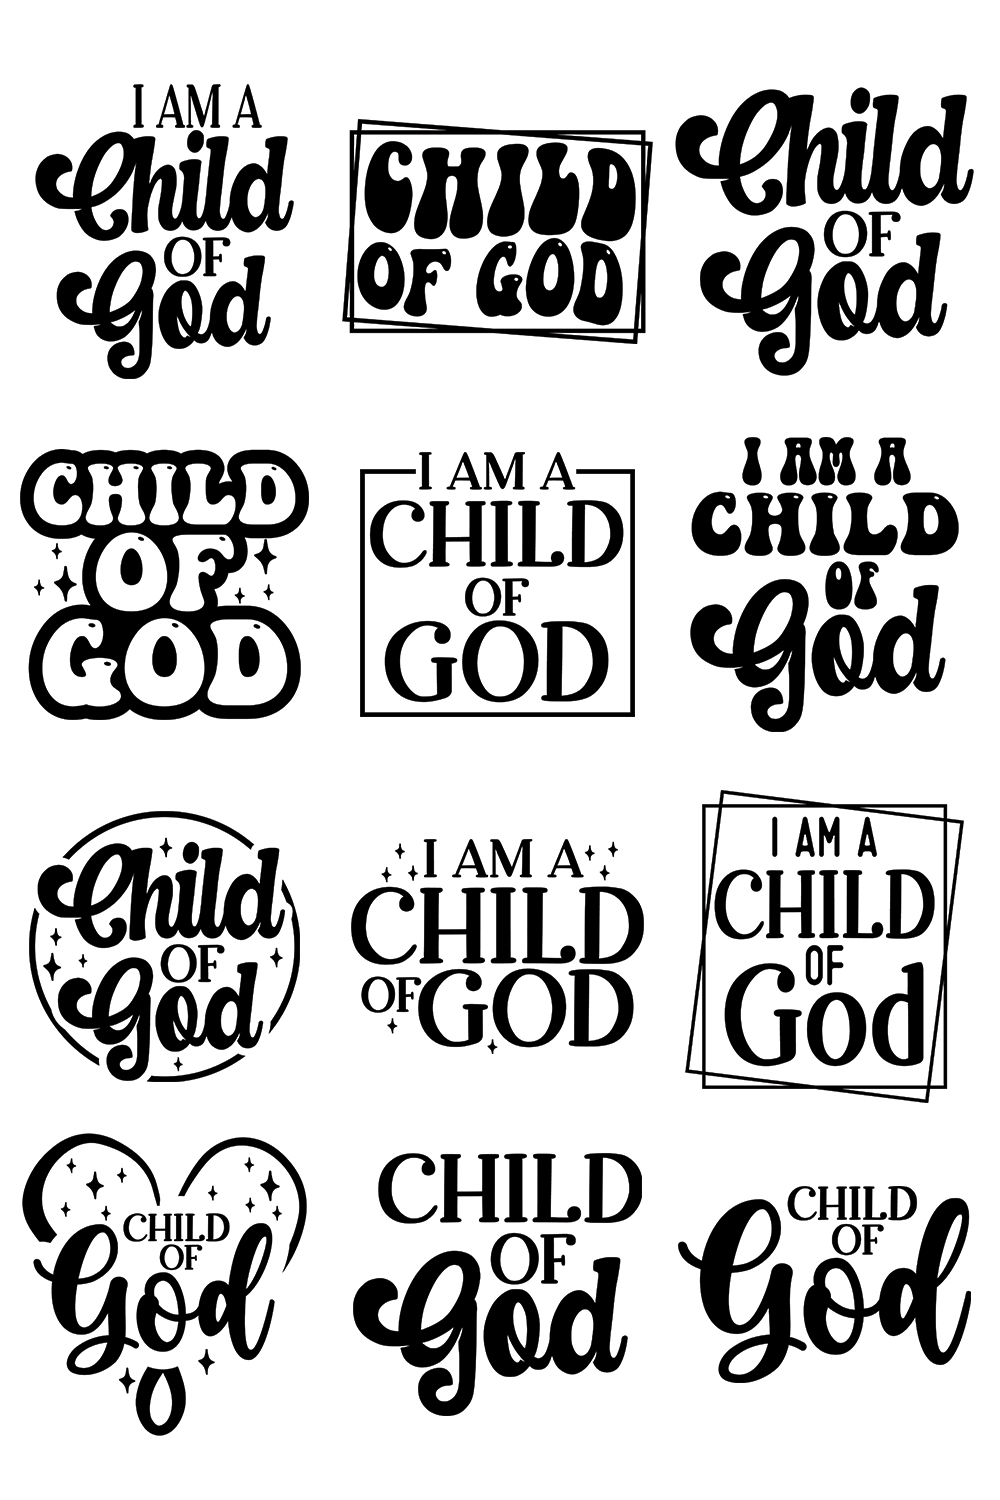 Child of God SVG,I am a Child of God,Religious Shirt SVG,Christian Quotes SVG,Handlettered SVG,Motivational SVG, pinterest preview image.